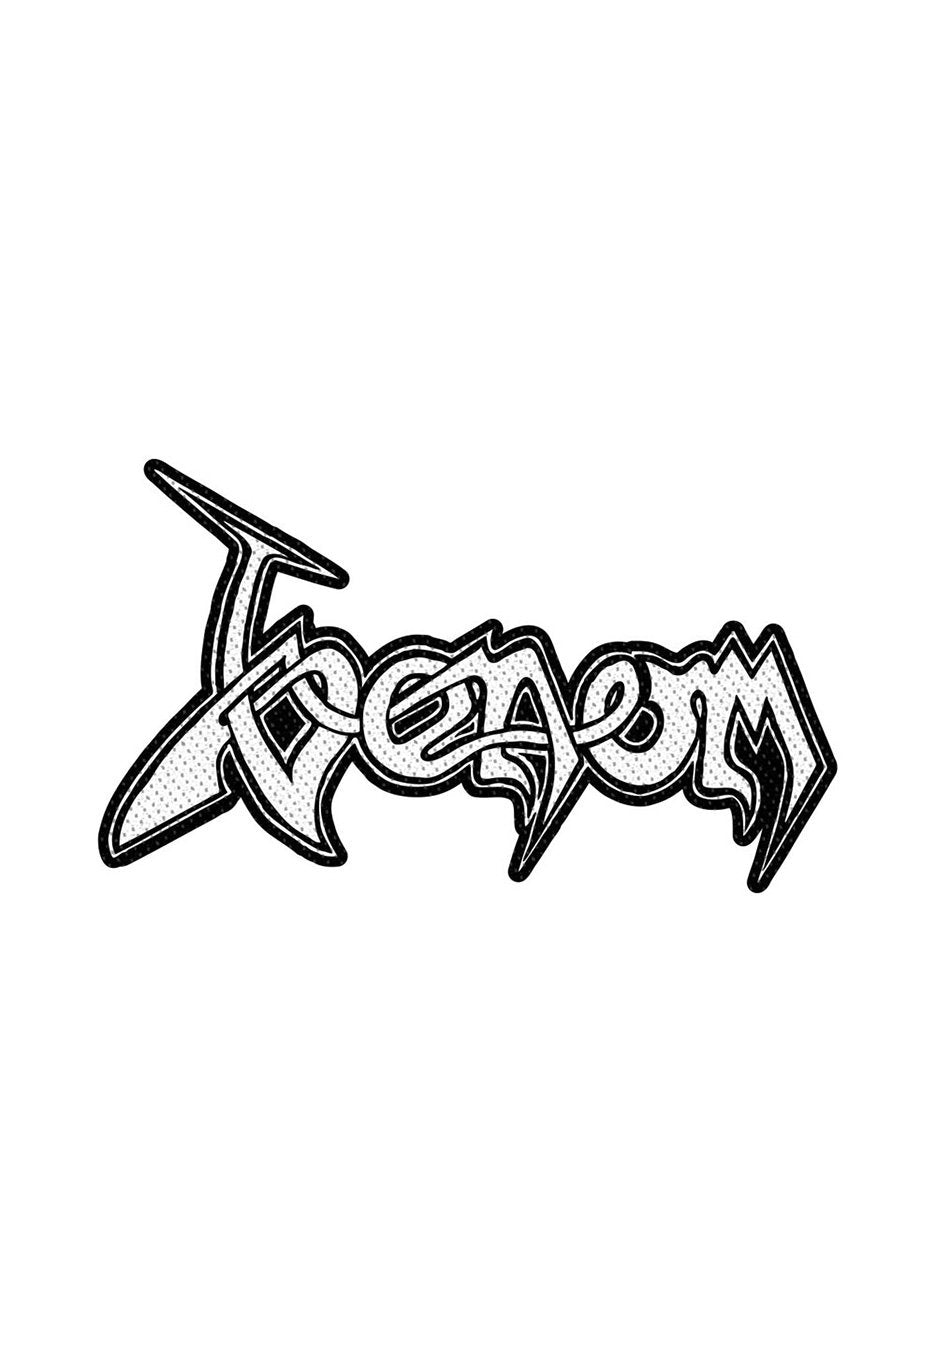 Venom - Logo Cut Out - Patch